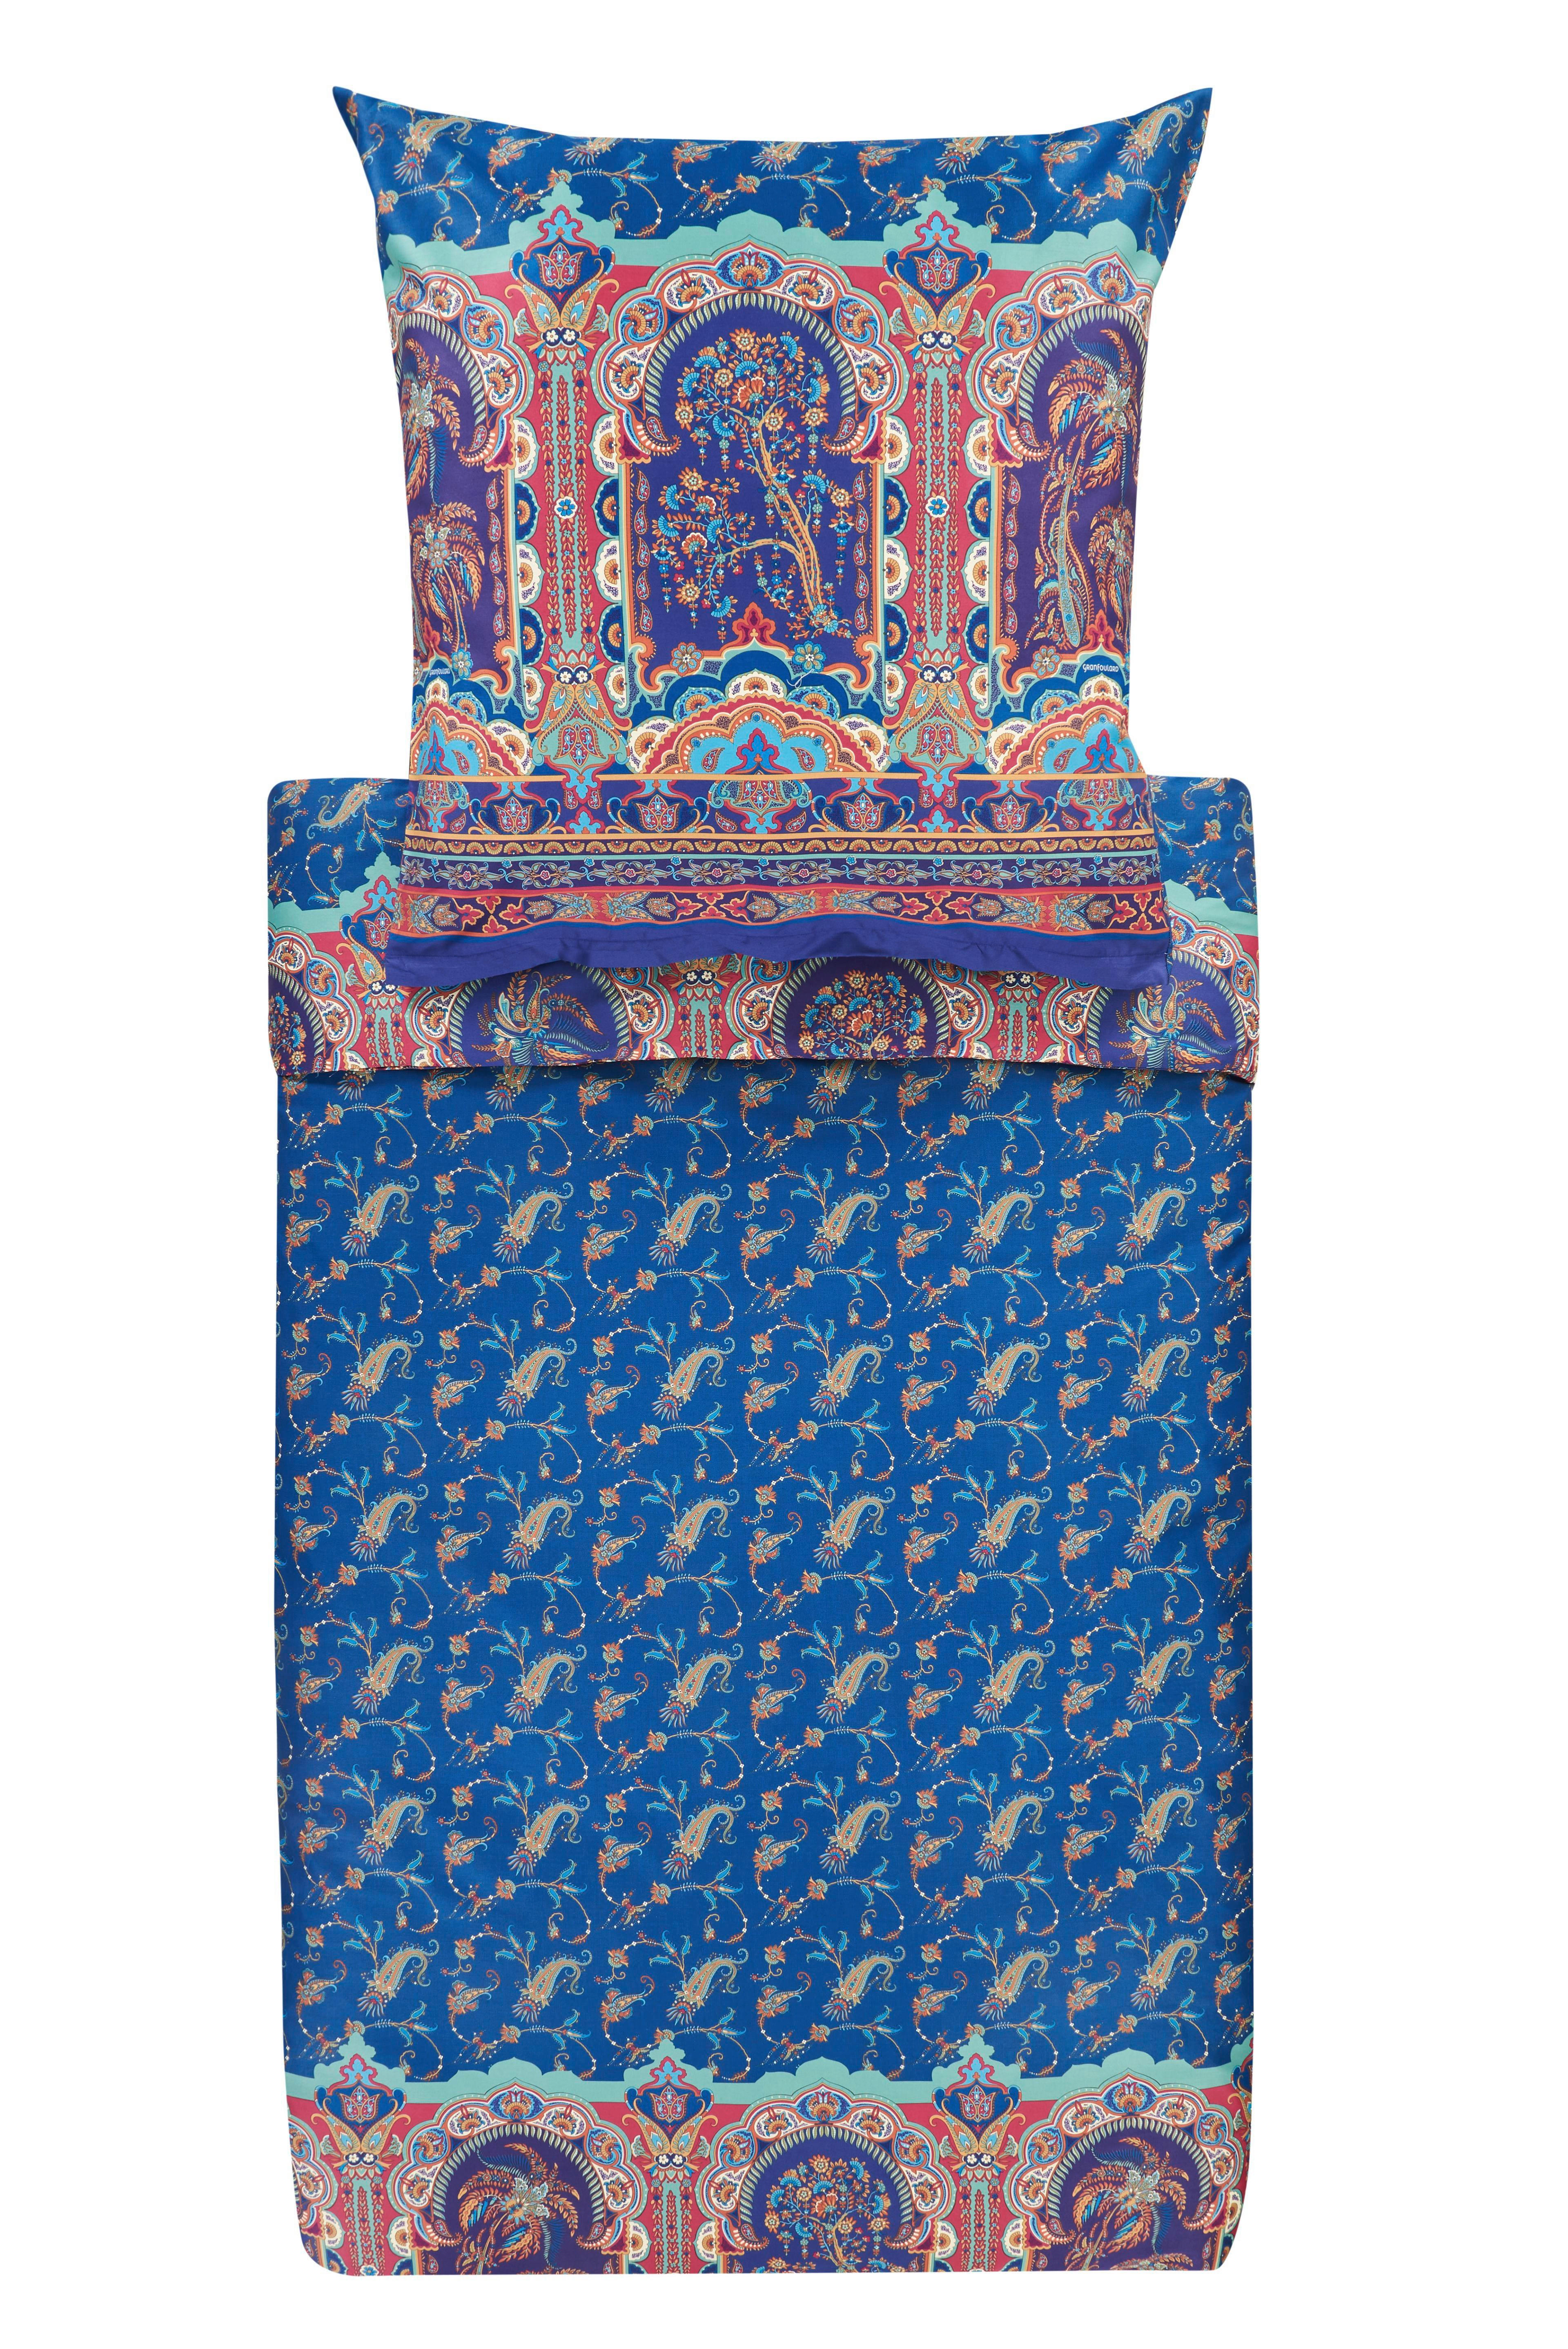 WENDEBETTWÄSCHE Normanni B1 Makosatin  - Blau, LIFESTYLE, Textil (135/200cm) - Bassetti